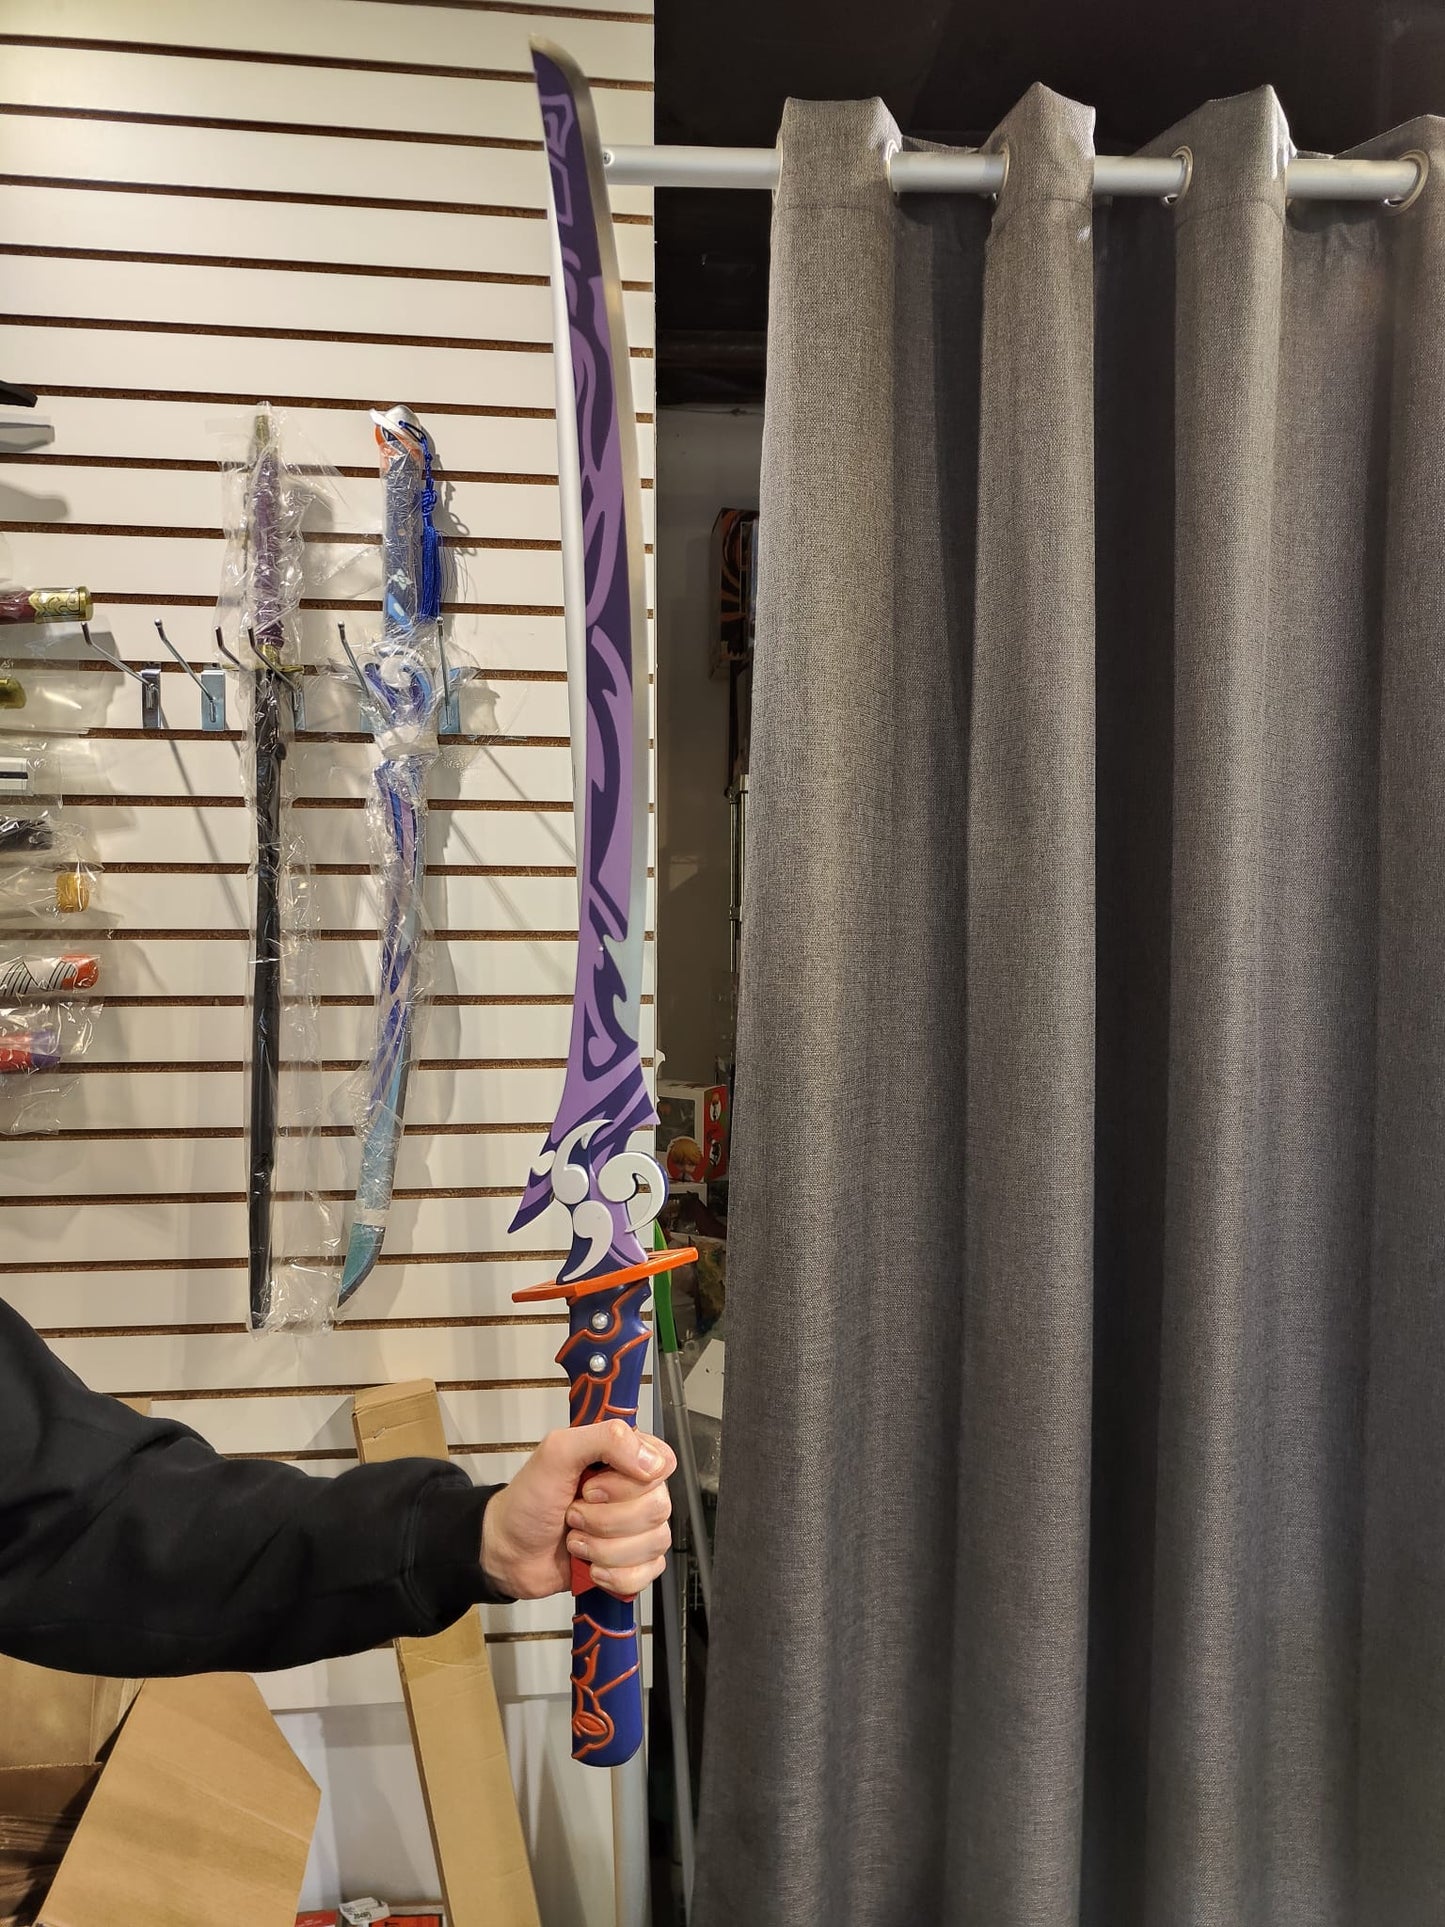 Raiden Shogun Sword(Price Does Not Include Shipping)